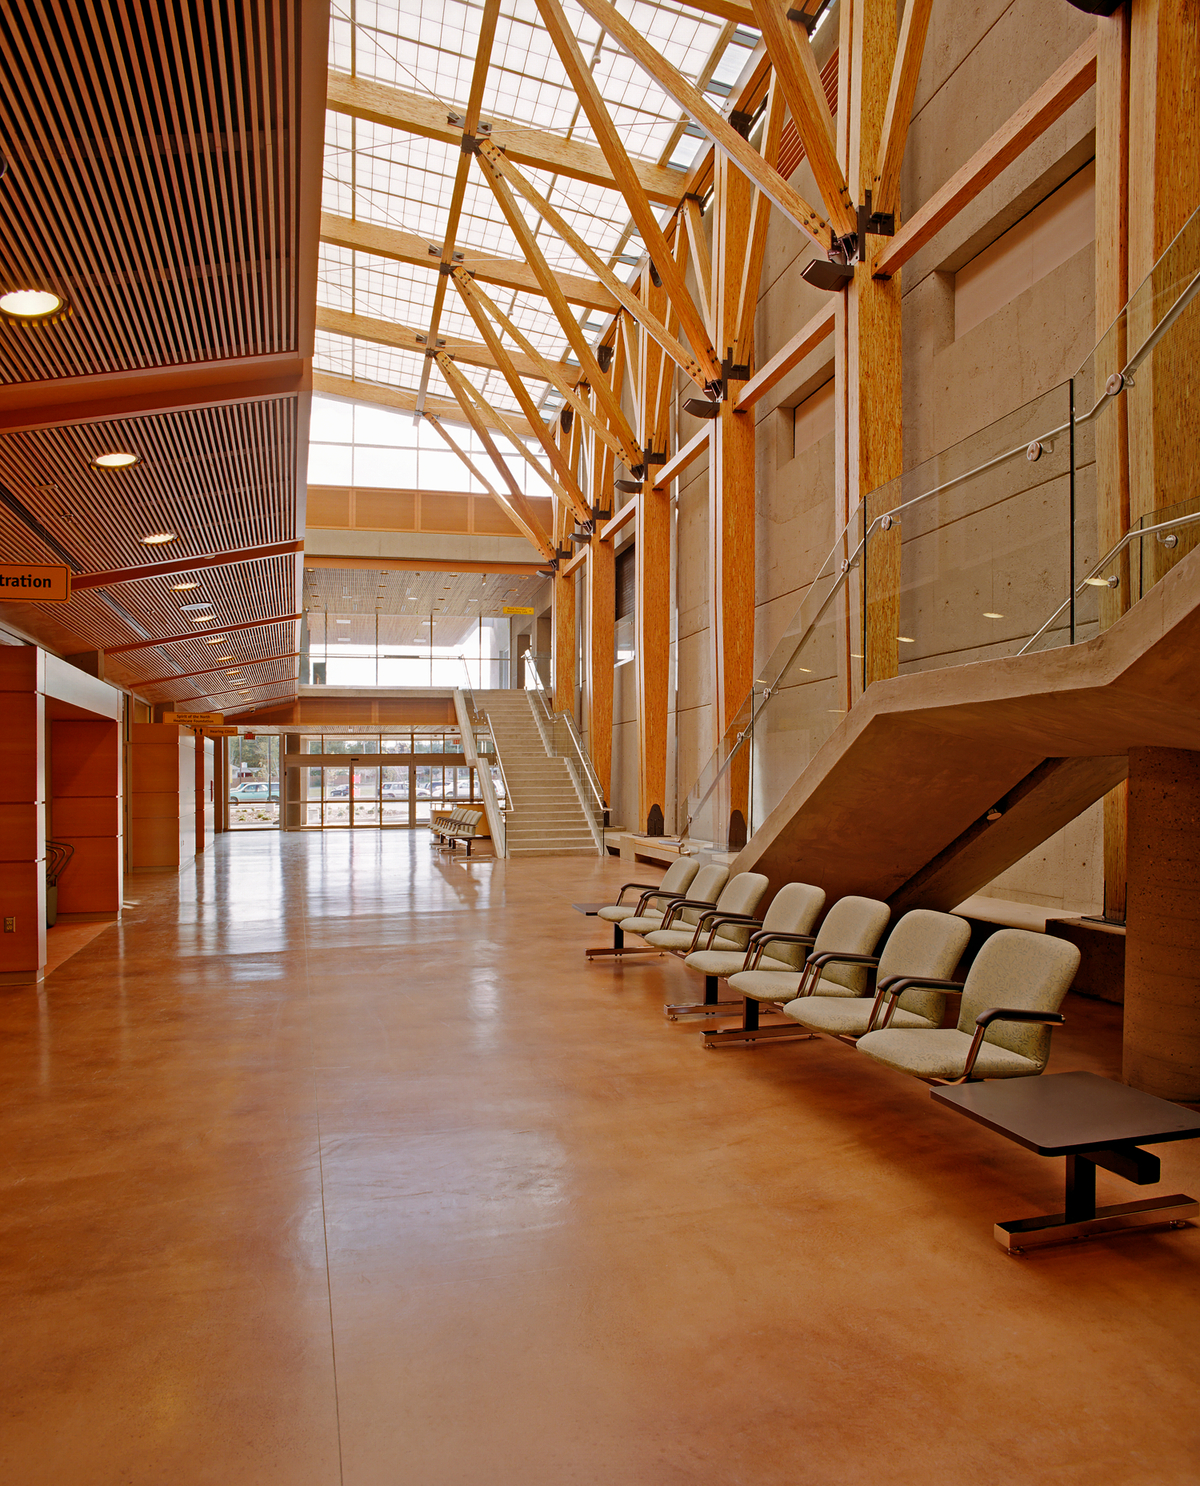 木材、装饰、木制品和平行绞线木材(PSL)的柱和梁在北英属哥伦比亚大学多层中庭的白天室内景观中非常突出